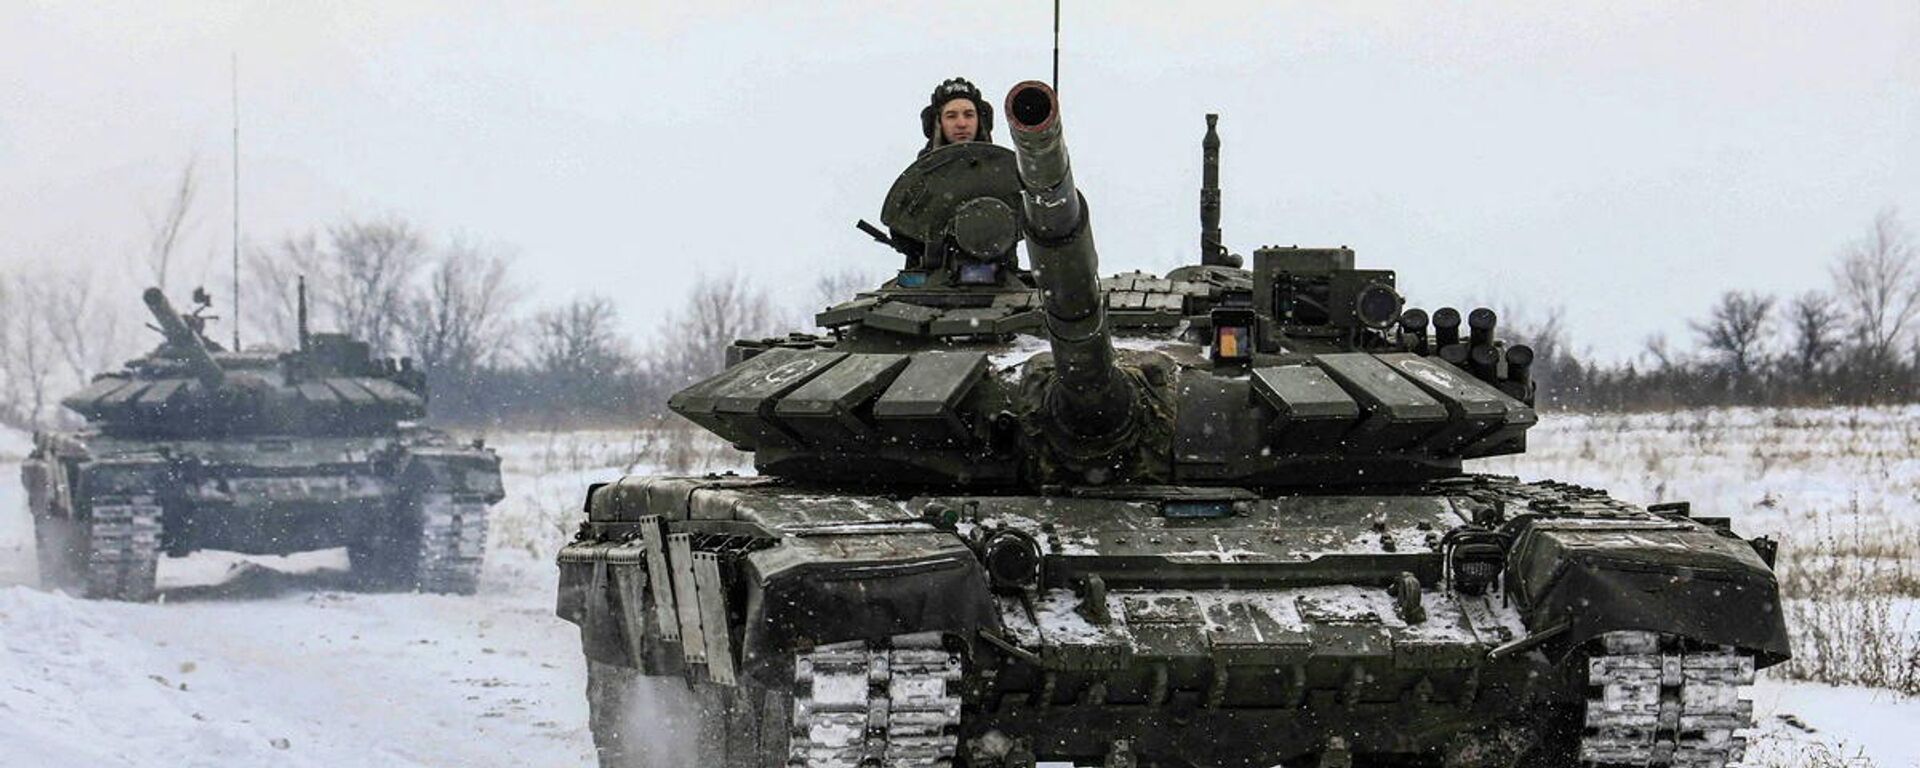 الجنود الروس يقودون الدبابات خلال التدريبات العسكرية في منطقة لينينغراد، روسيا، 14 فبراير 2022. - سبوتنيك عربي, 1920, 17.02.2022